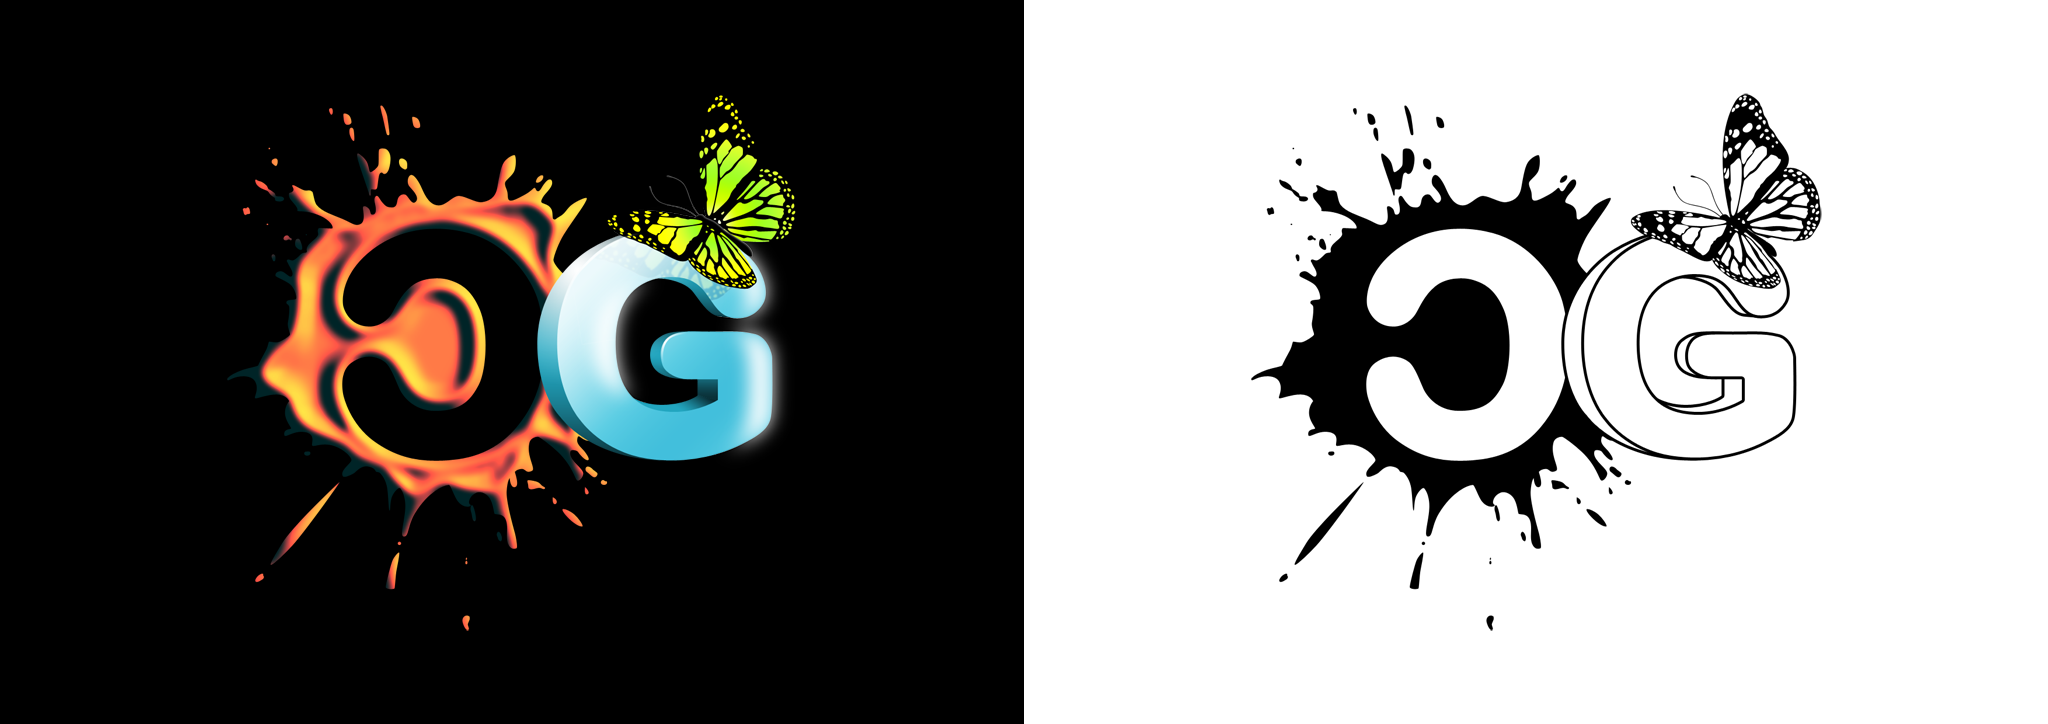 G c cg. Логотип CG. Логотип с буквами CG. Красивый логотип g. Красивые логотипы g5.